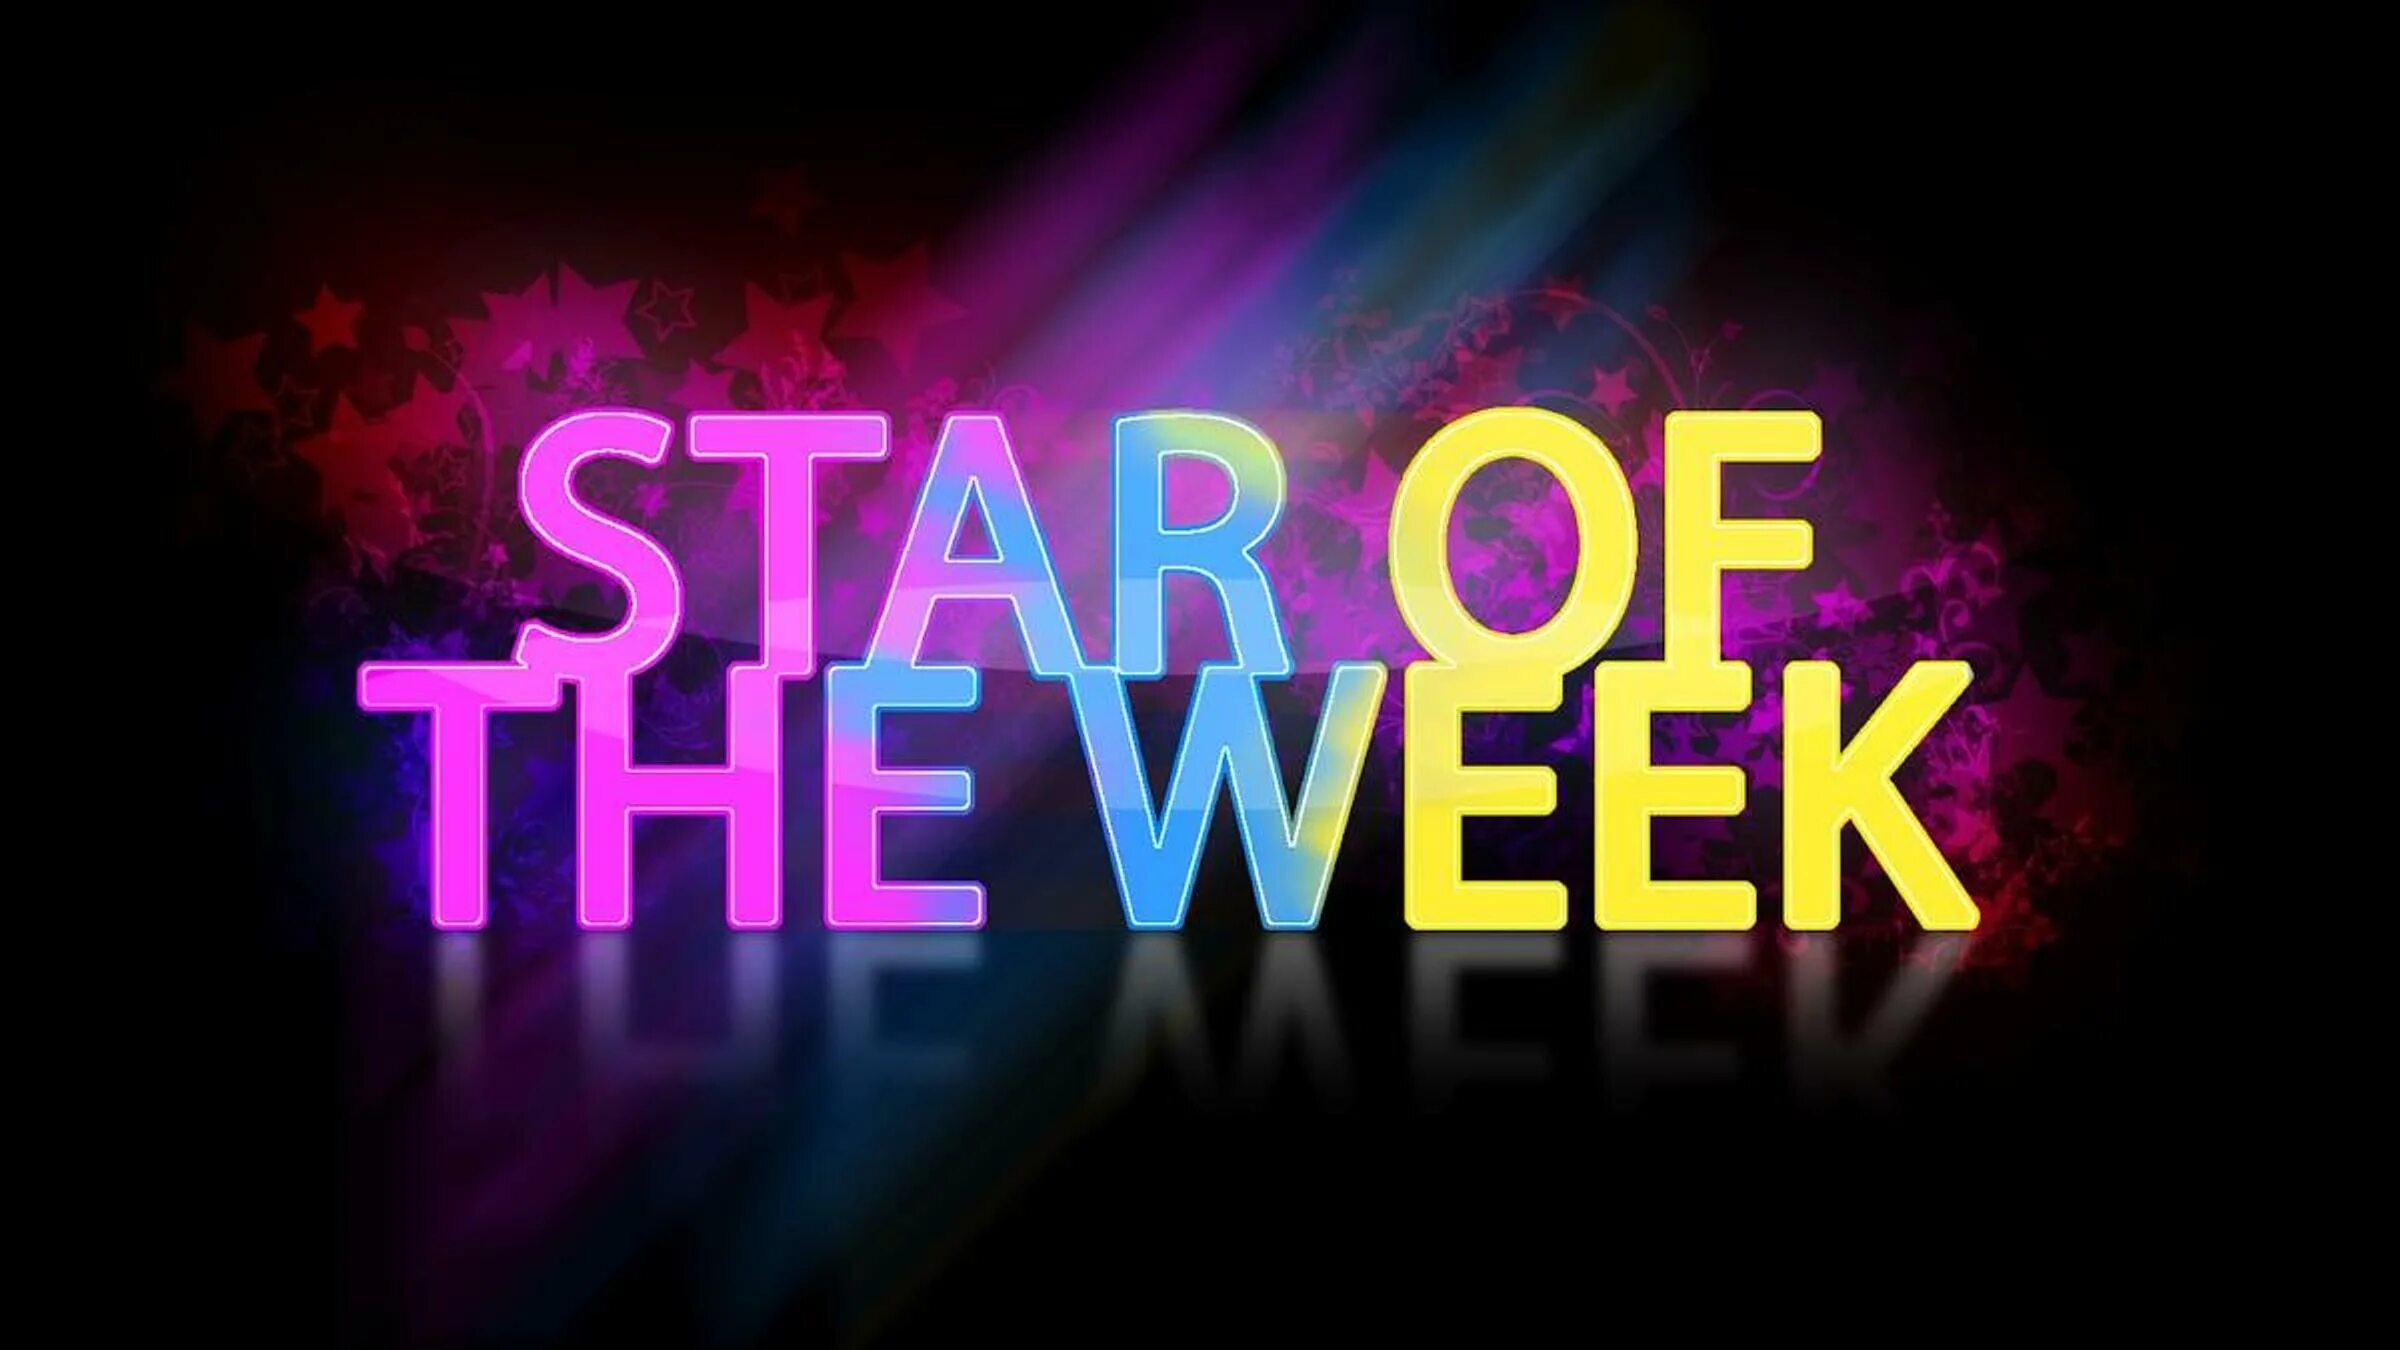 Star of the week. The week. Star of the week Award. Картинки this week.